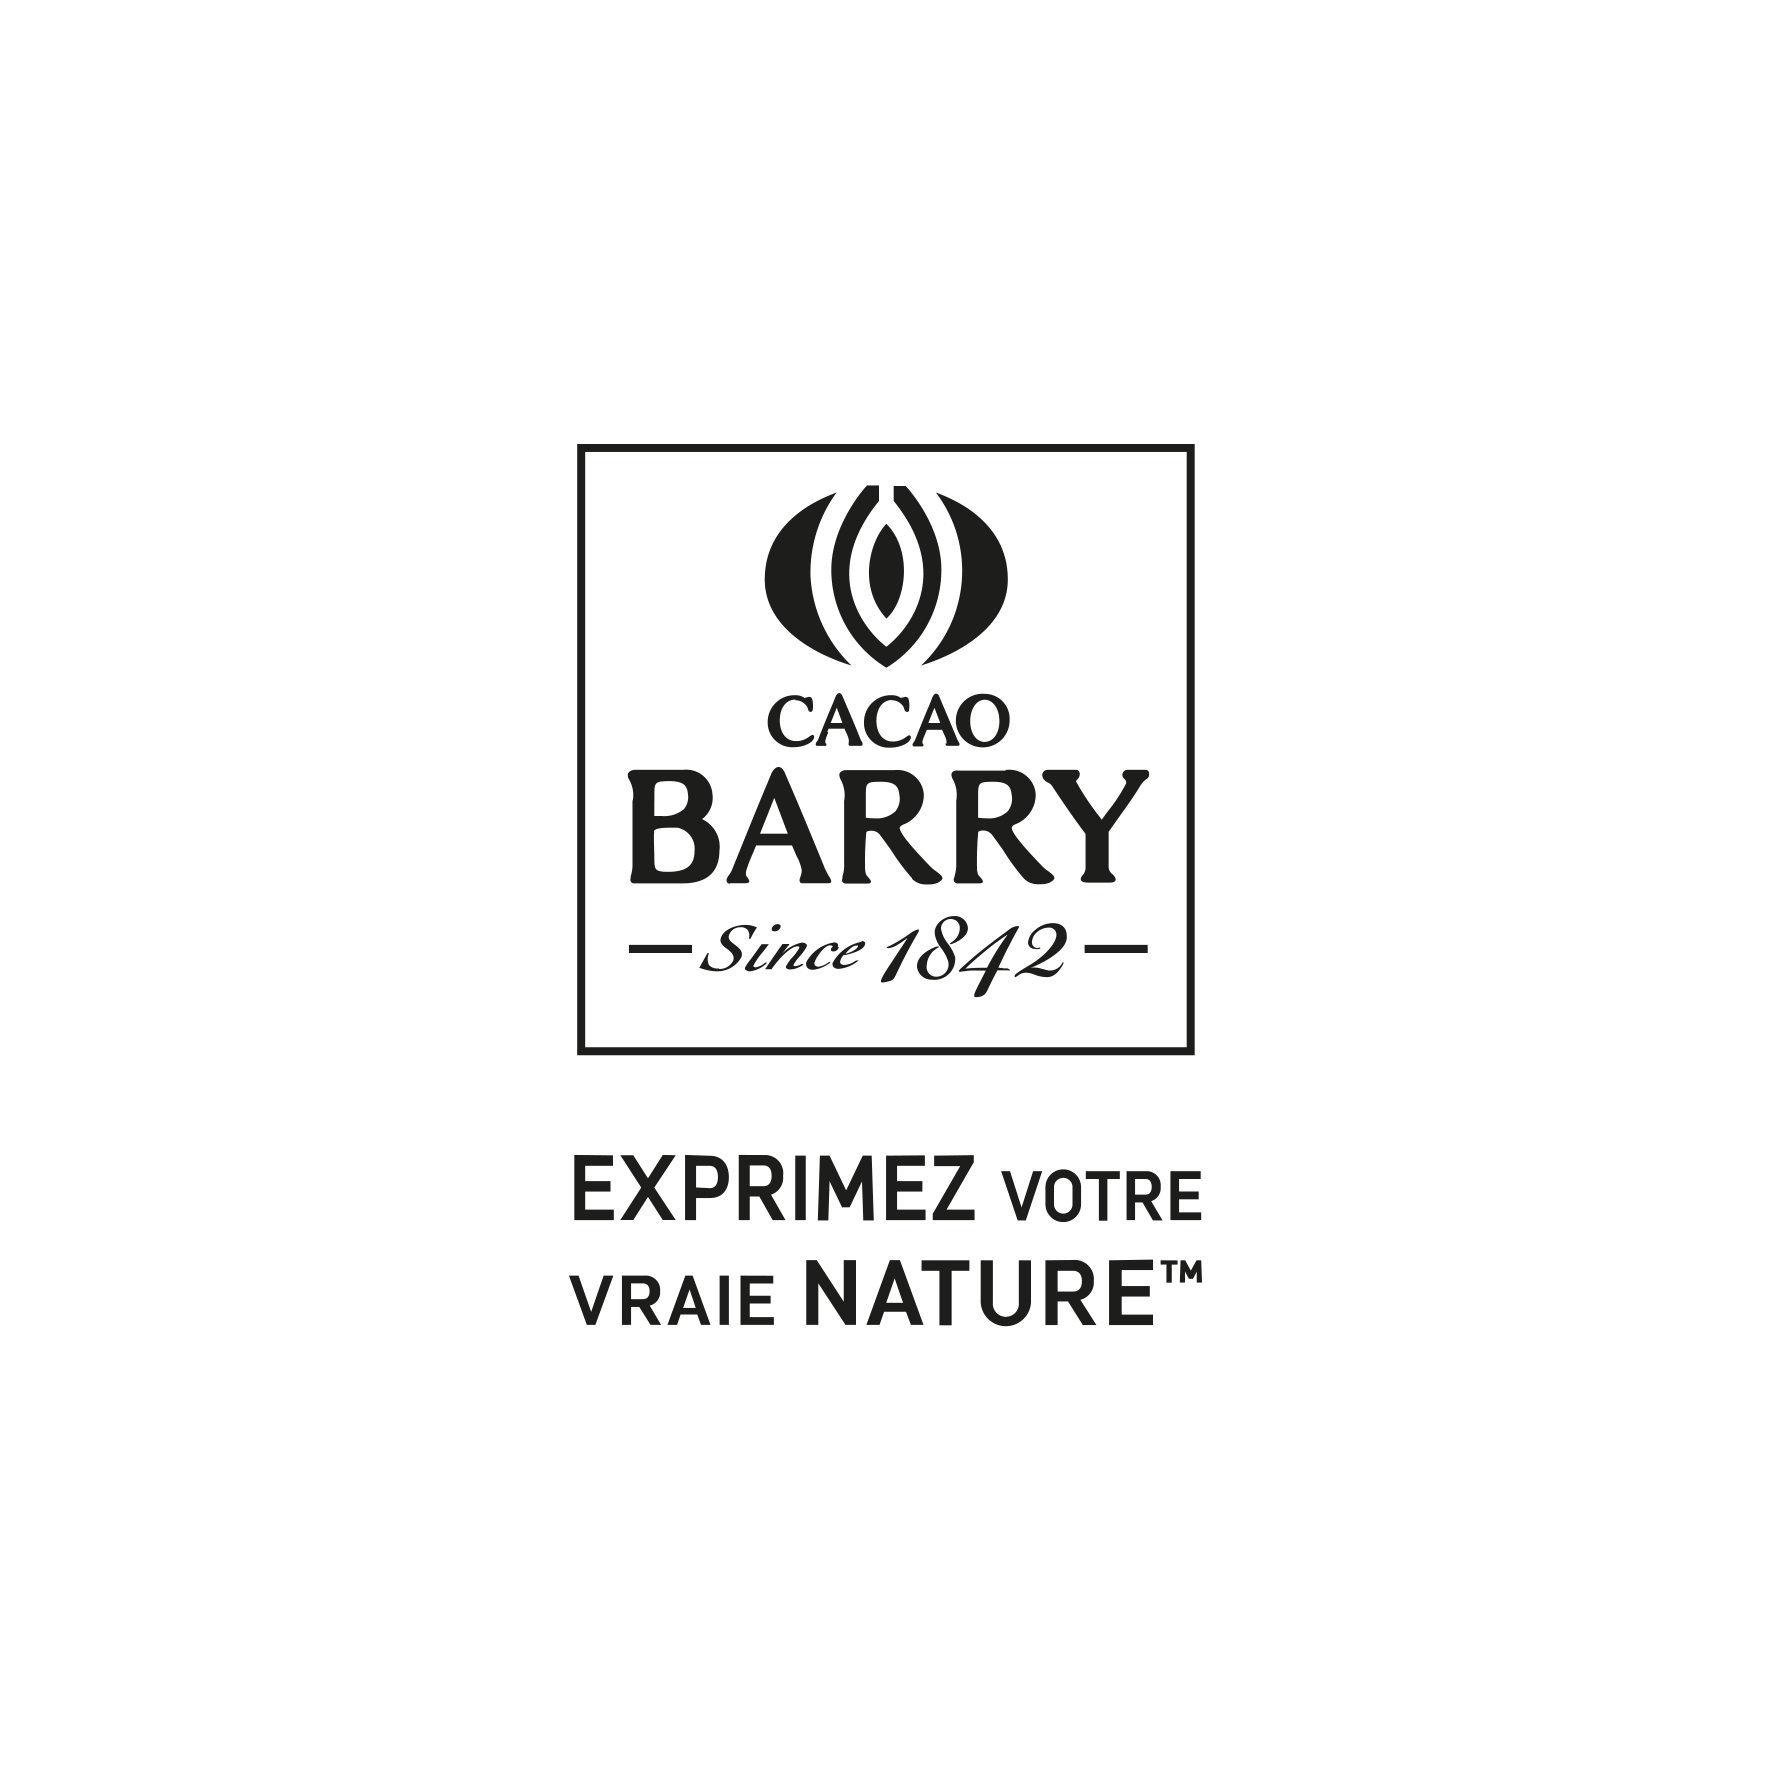 Cacao Barry partenaire du label BEE FRIENDLY® pour ses produits à base d’amandes